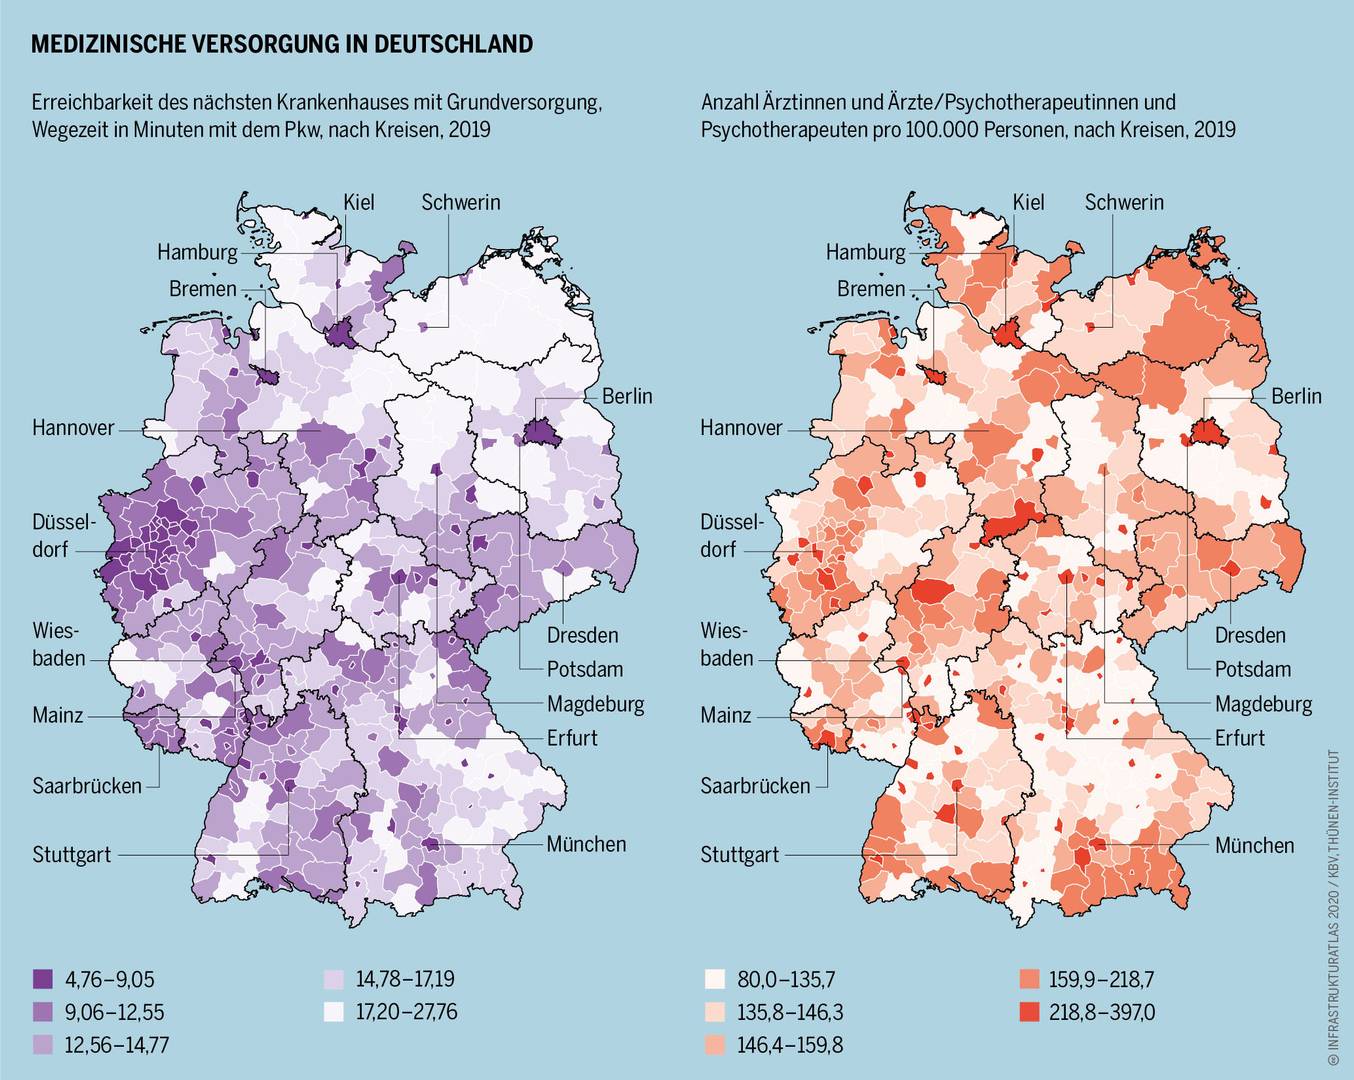 Карта доступности медицинской помощи в Германии. Слева — доступность ближайшей больницы в минутах пути; справа — количество врачей/психотерапевтов на 100 тыс. населения